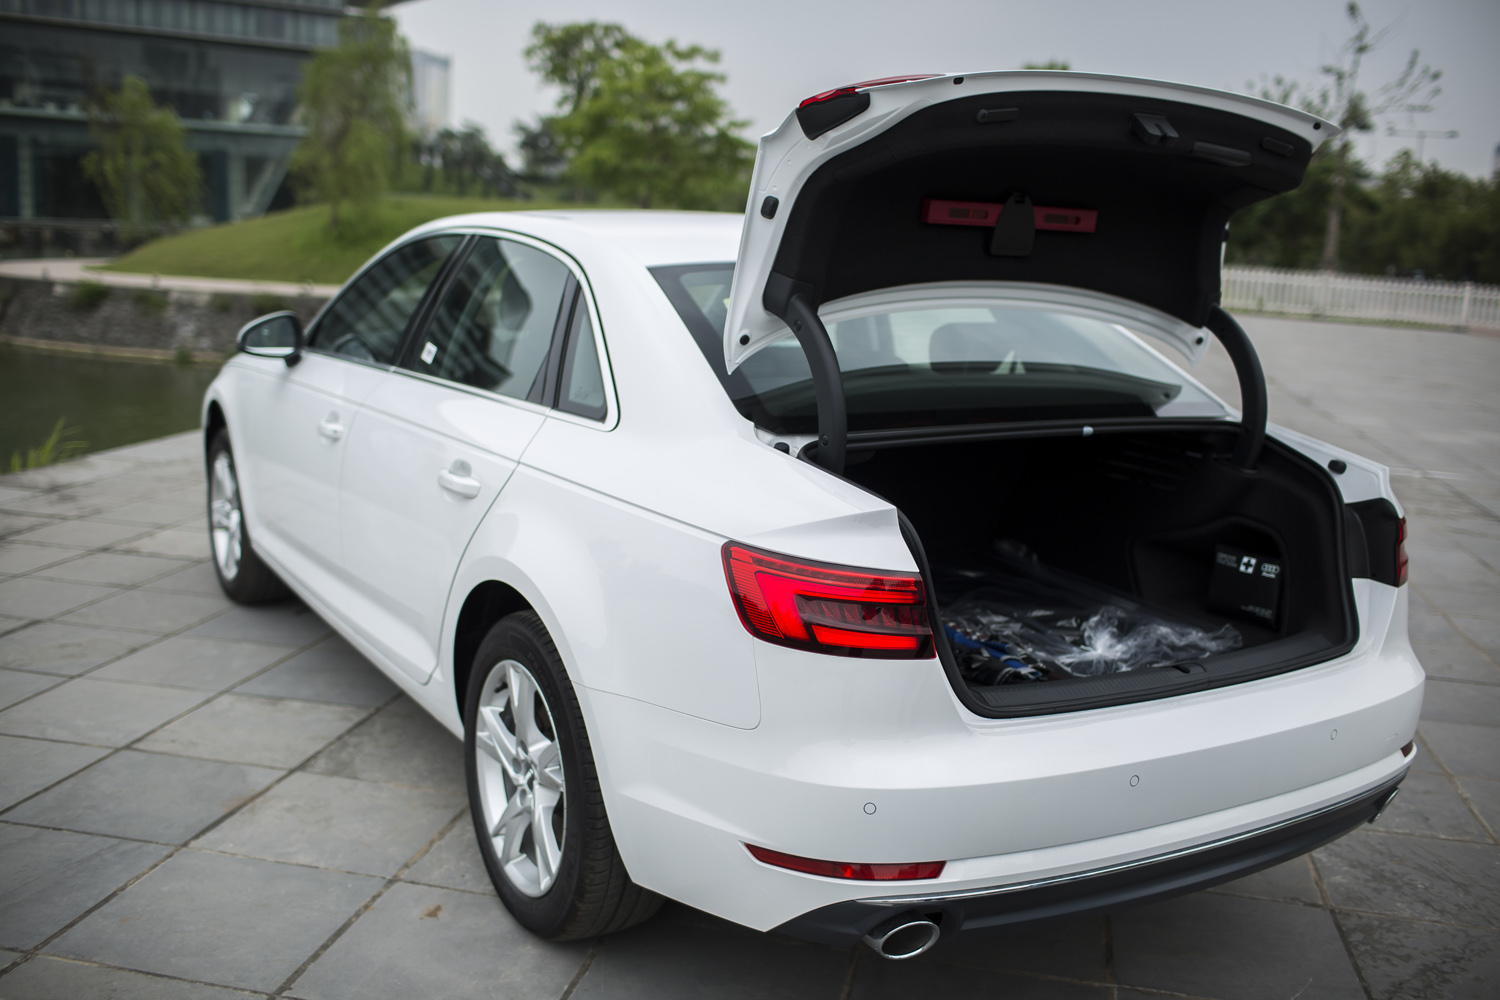 
Khoang hành lý của Audi A4 thế hệ mới có dung tích 480 lit.
